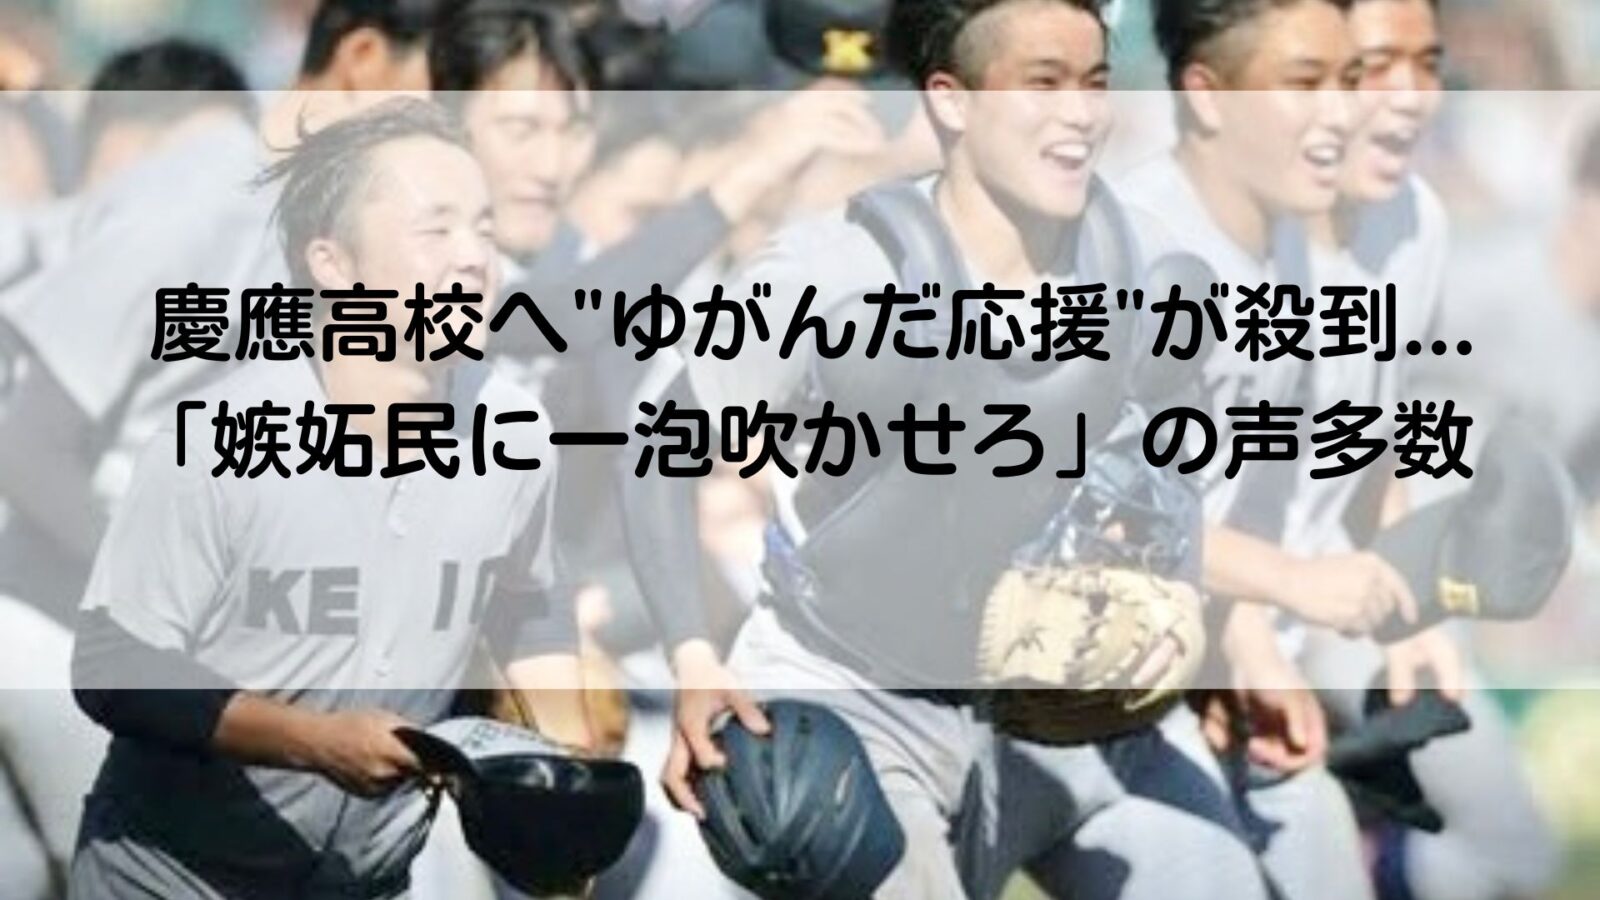 慶応高校の記事のアイキャッチ画像